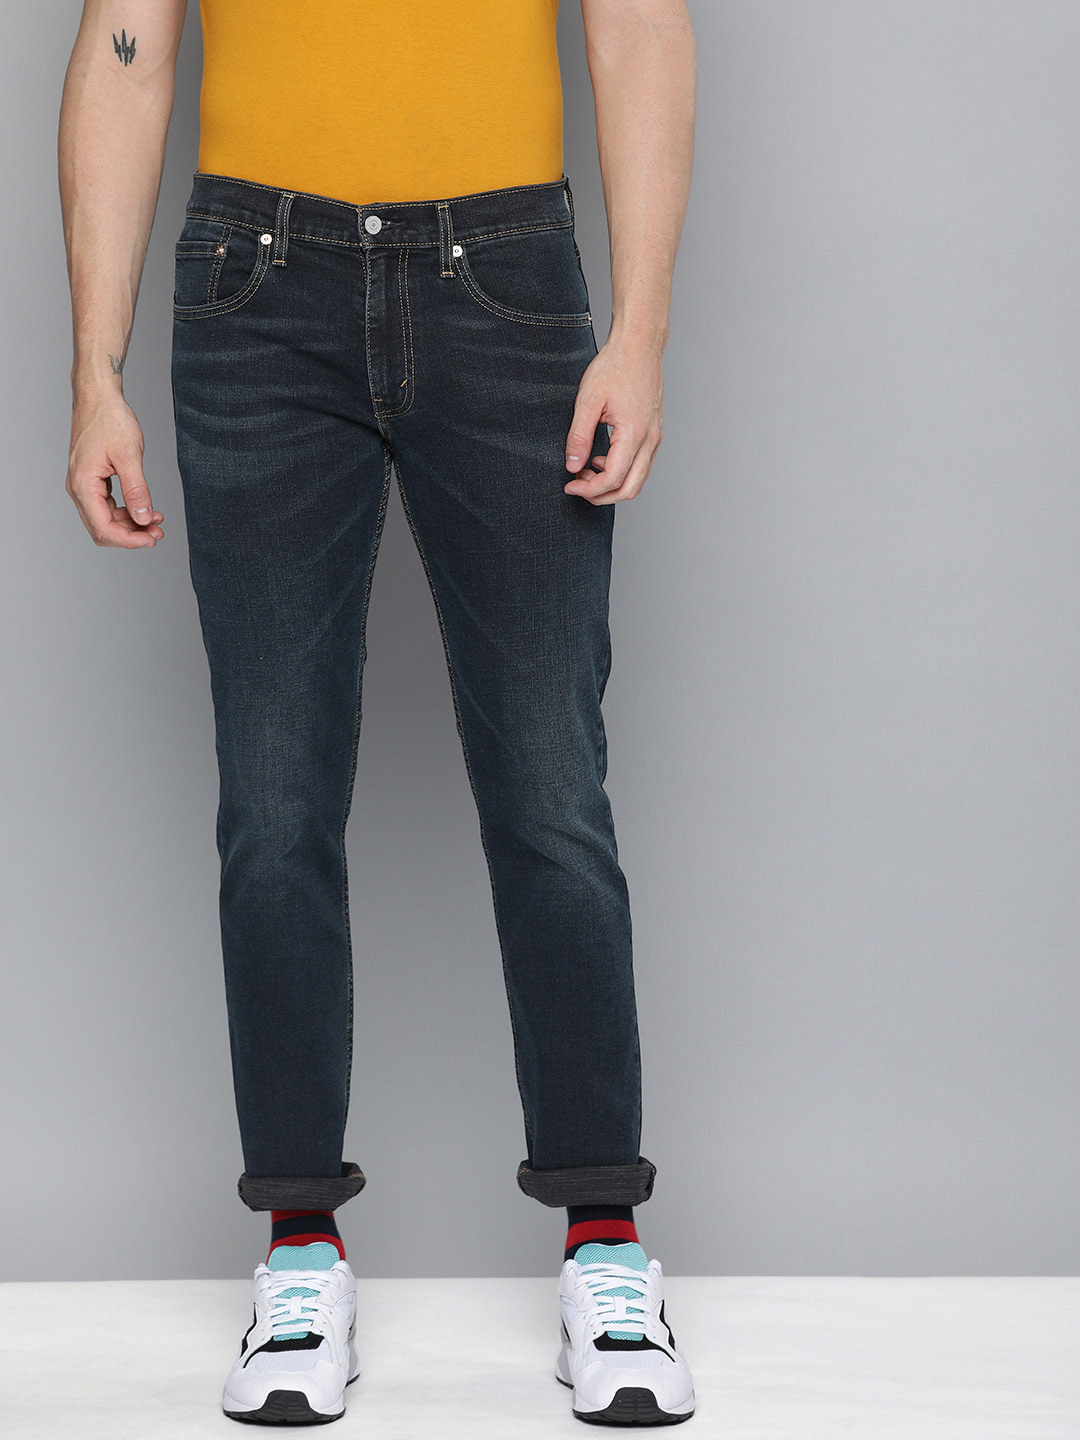 levis jeans 65504